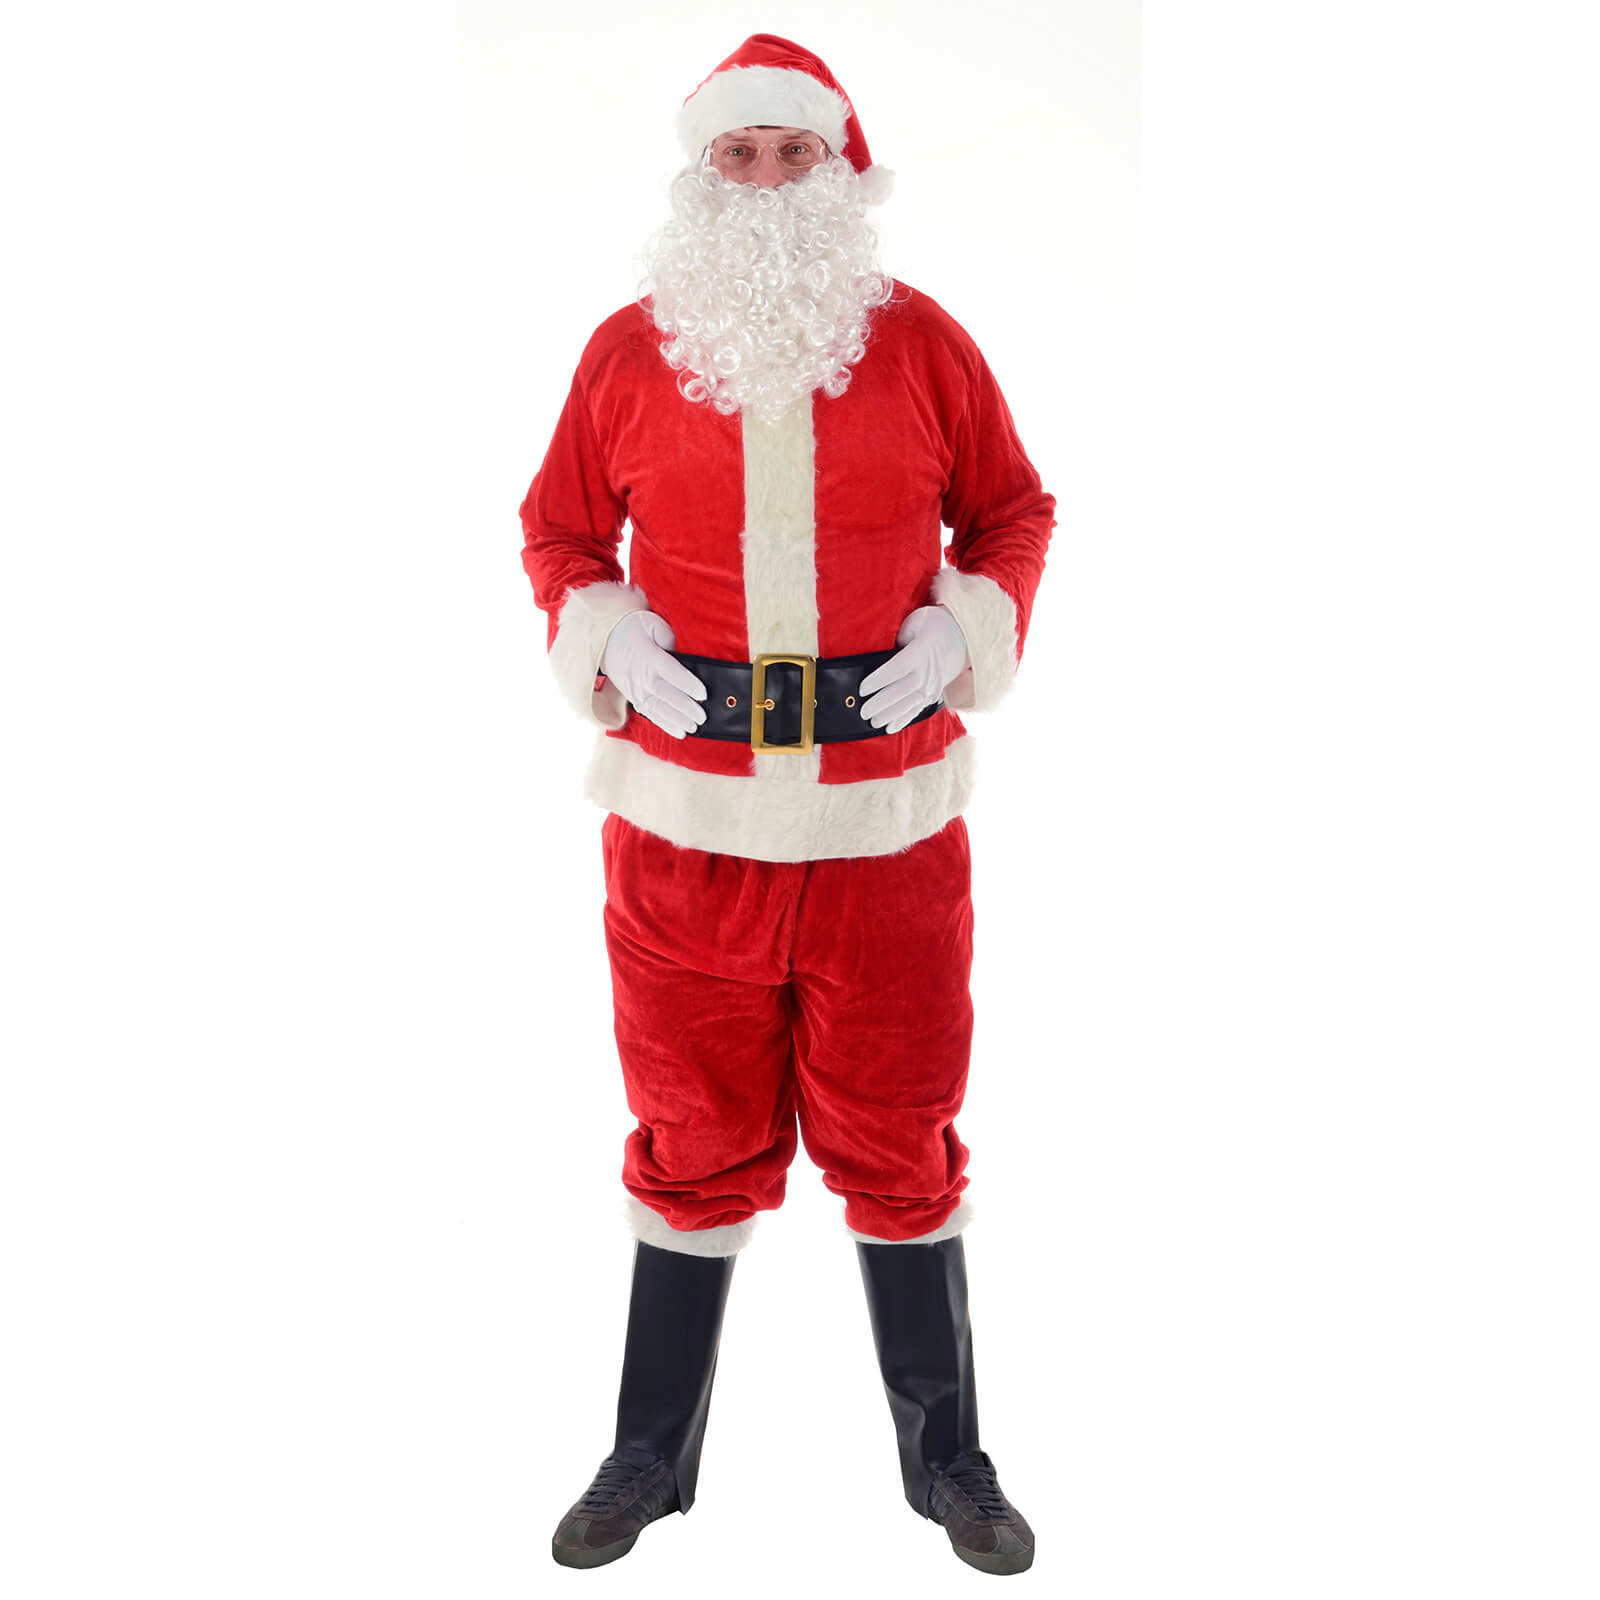 Mr Crimbo Deluxe Santa Suit Father Christmas Costume - MrCrimbo.co.uk -XS7097 - One Size -santa